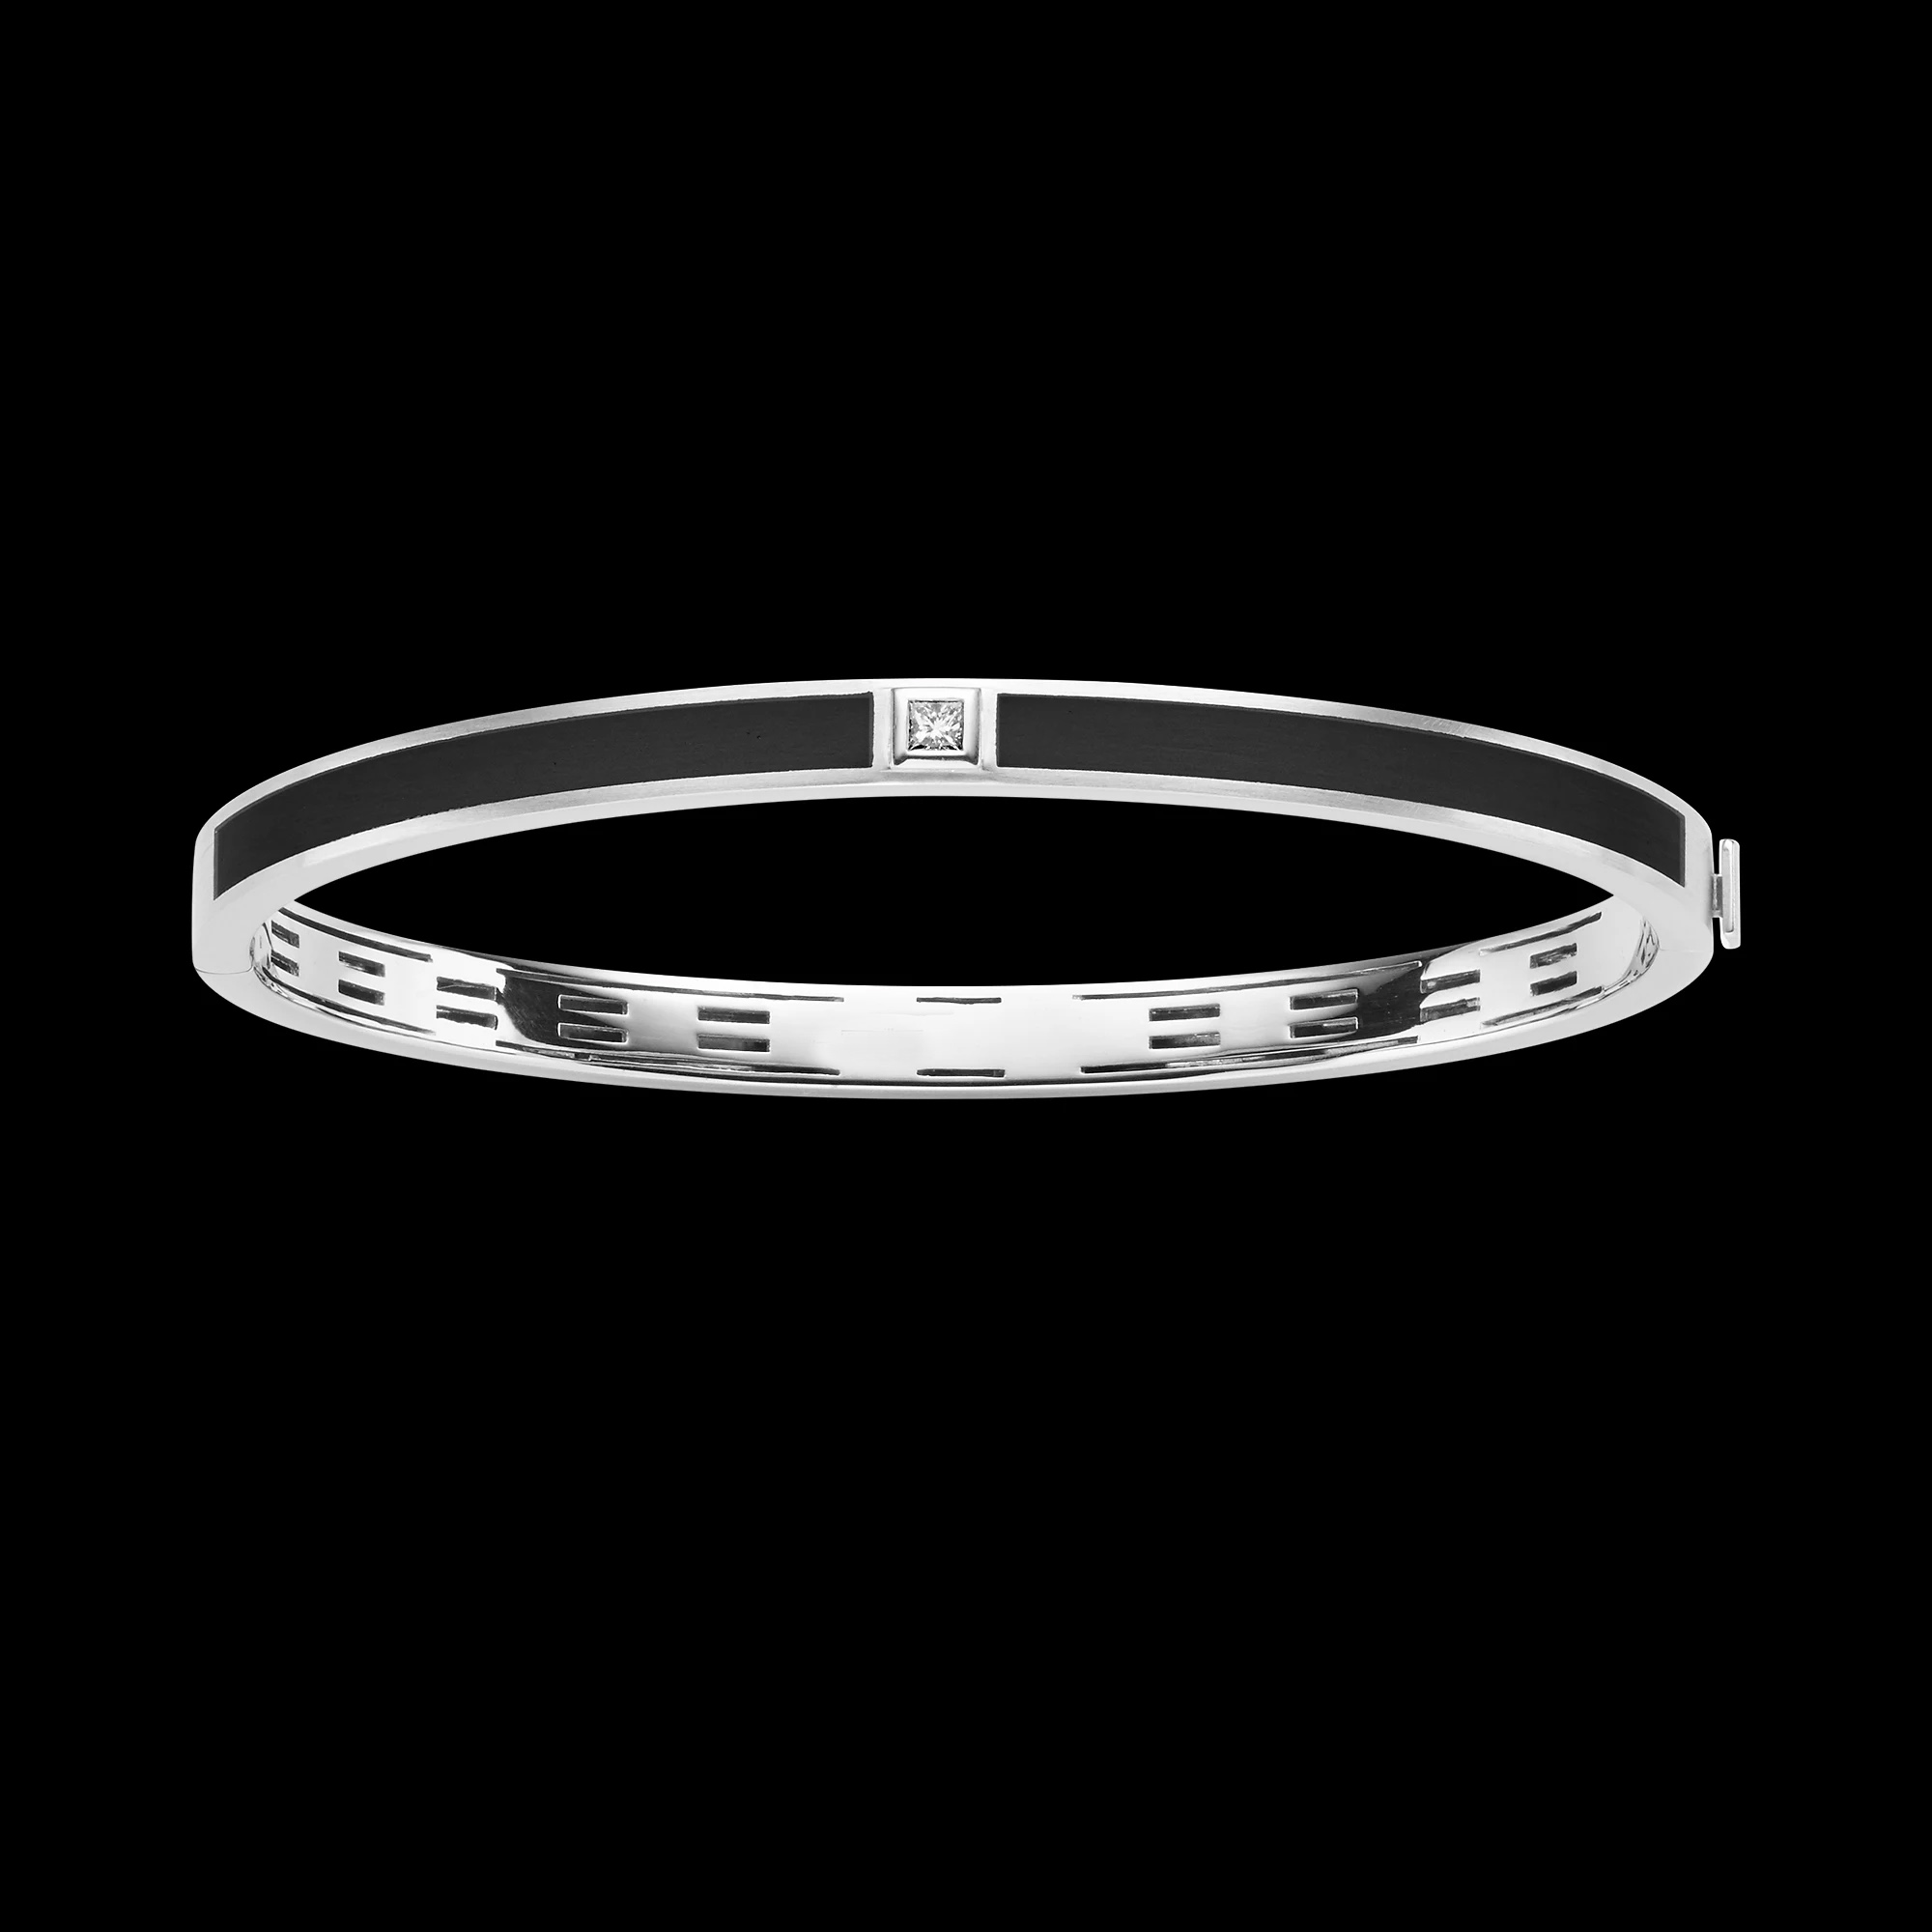 Wholesale Custom Personalized OEM/ODM Jewelry bracelet in 925 Sterling Silver